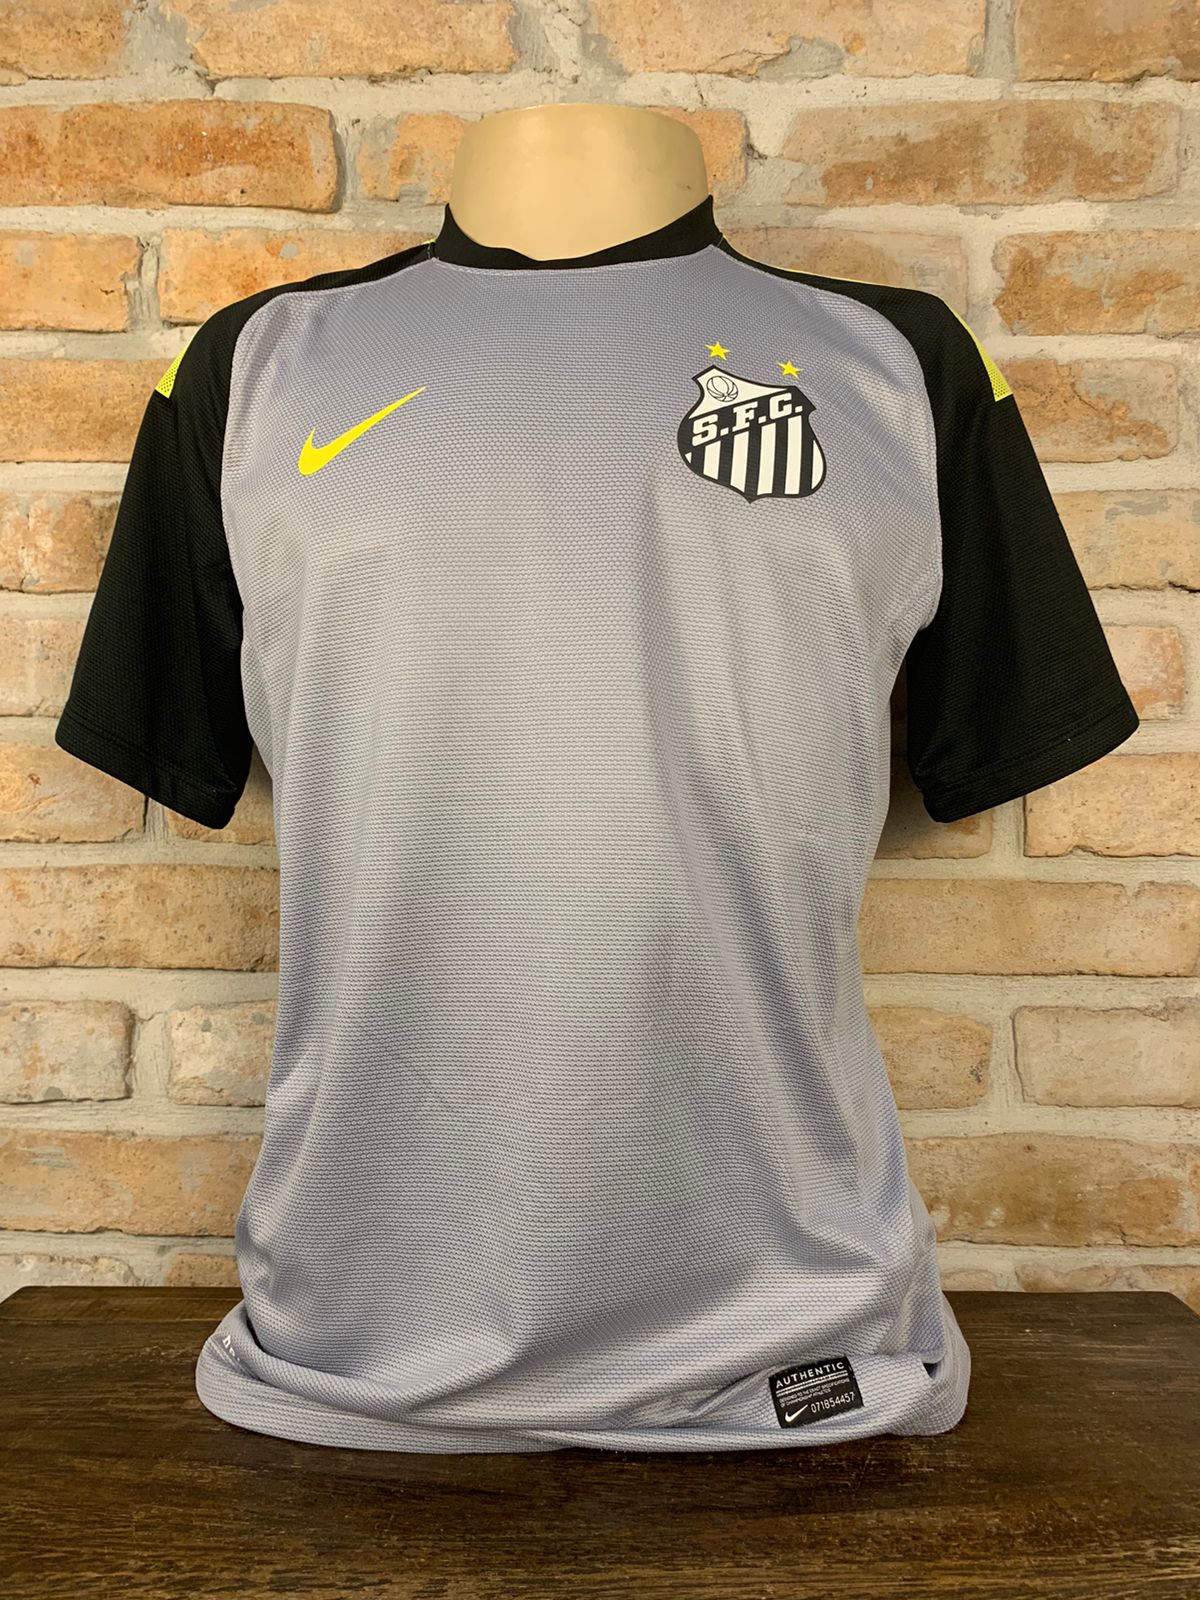 Bebé Escrutinio Monografía Camisa Santos Nike 2013 goleiro – Memorias do Esporte